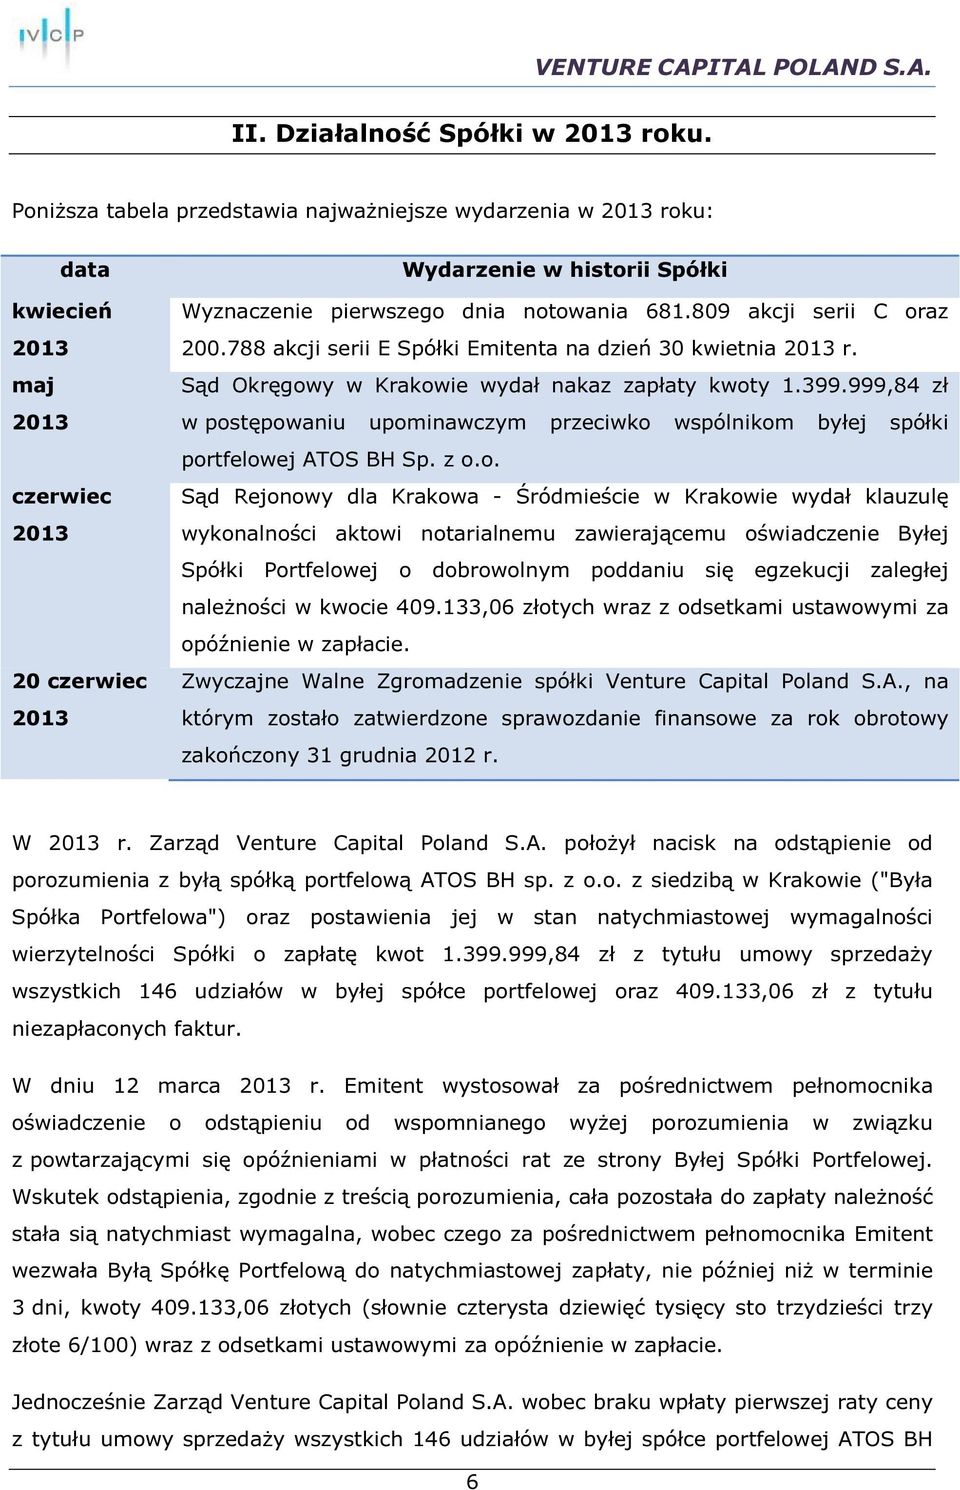 809 akcji serii C oraz 200.788 akcji serii E Spółki Emitenta na dzień 30 kwietnia 2013 r. Sąd Okręgowy w Krakowie wydał nakaz zapłaty kwoty 1.399.